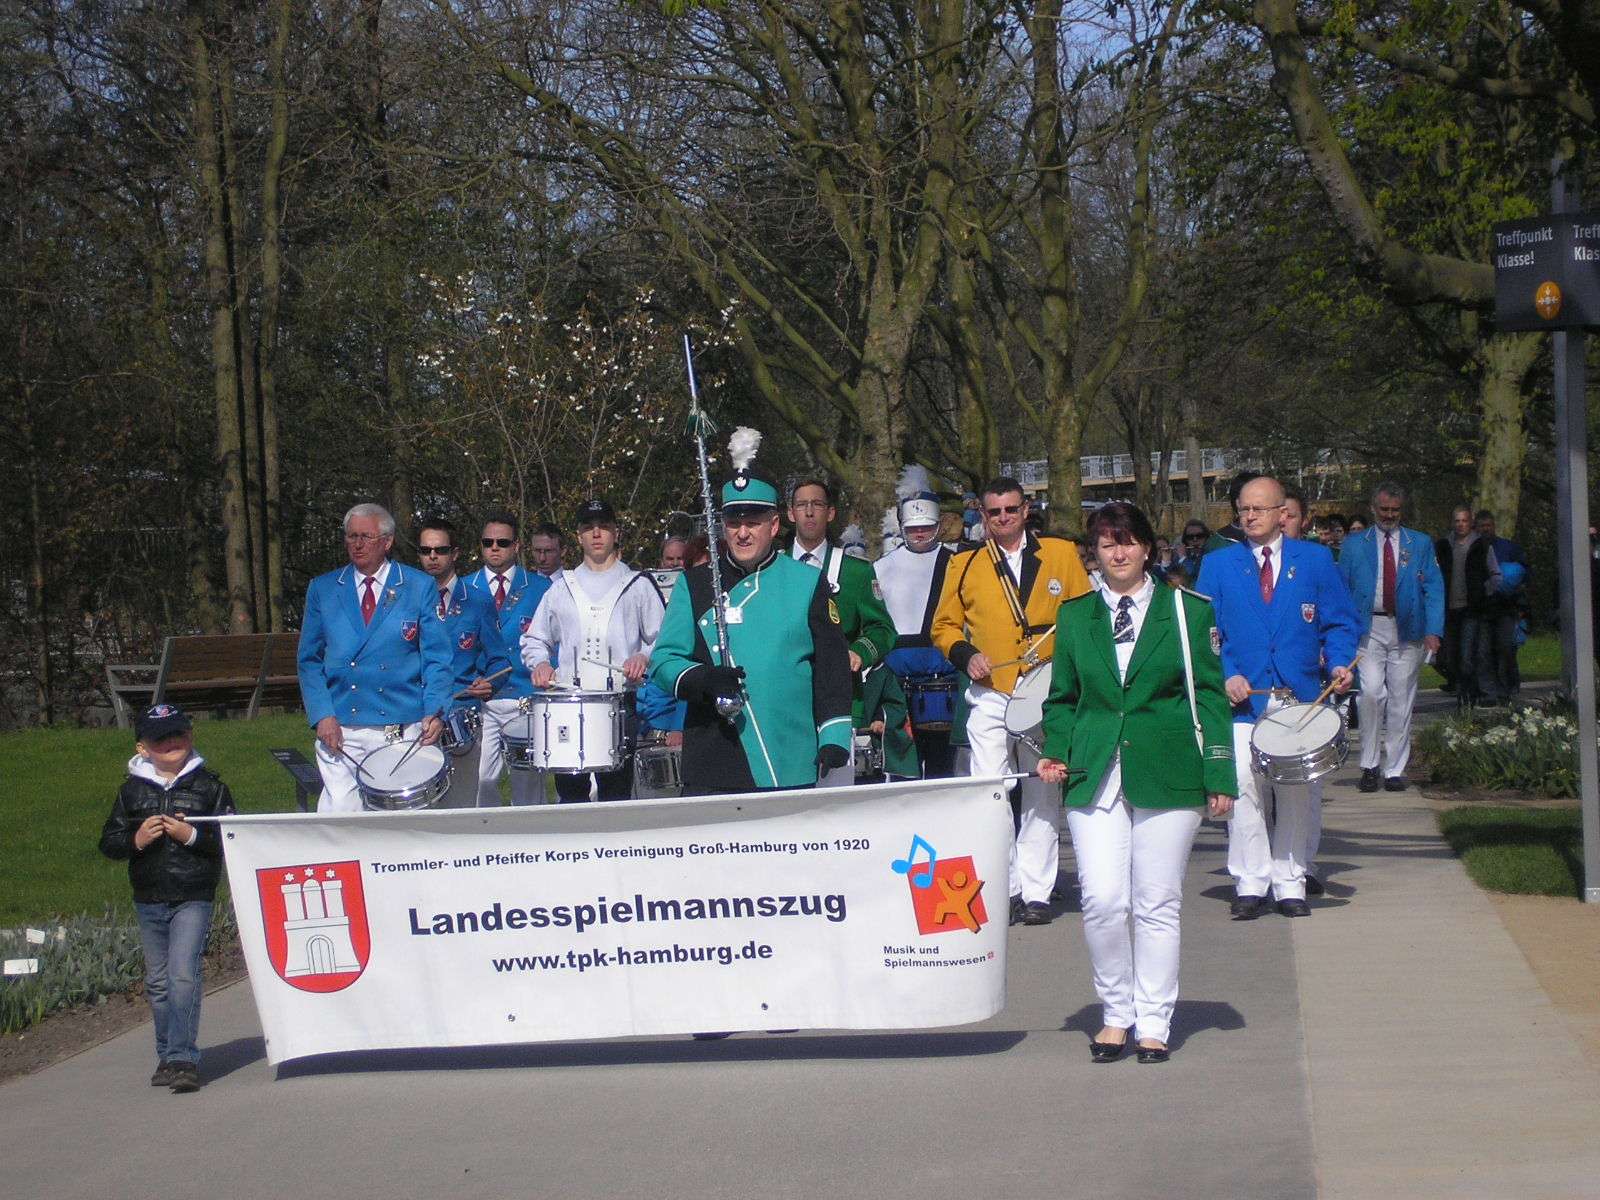 Landesspielmannszug Hamburg marschiert mit einem Banner, das vorweg getragen wird